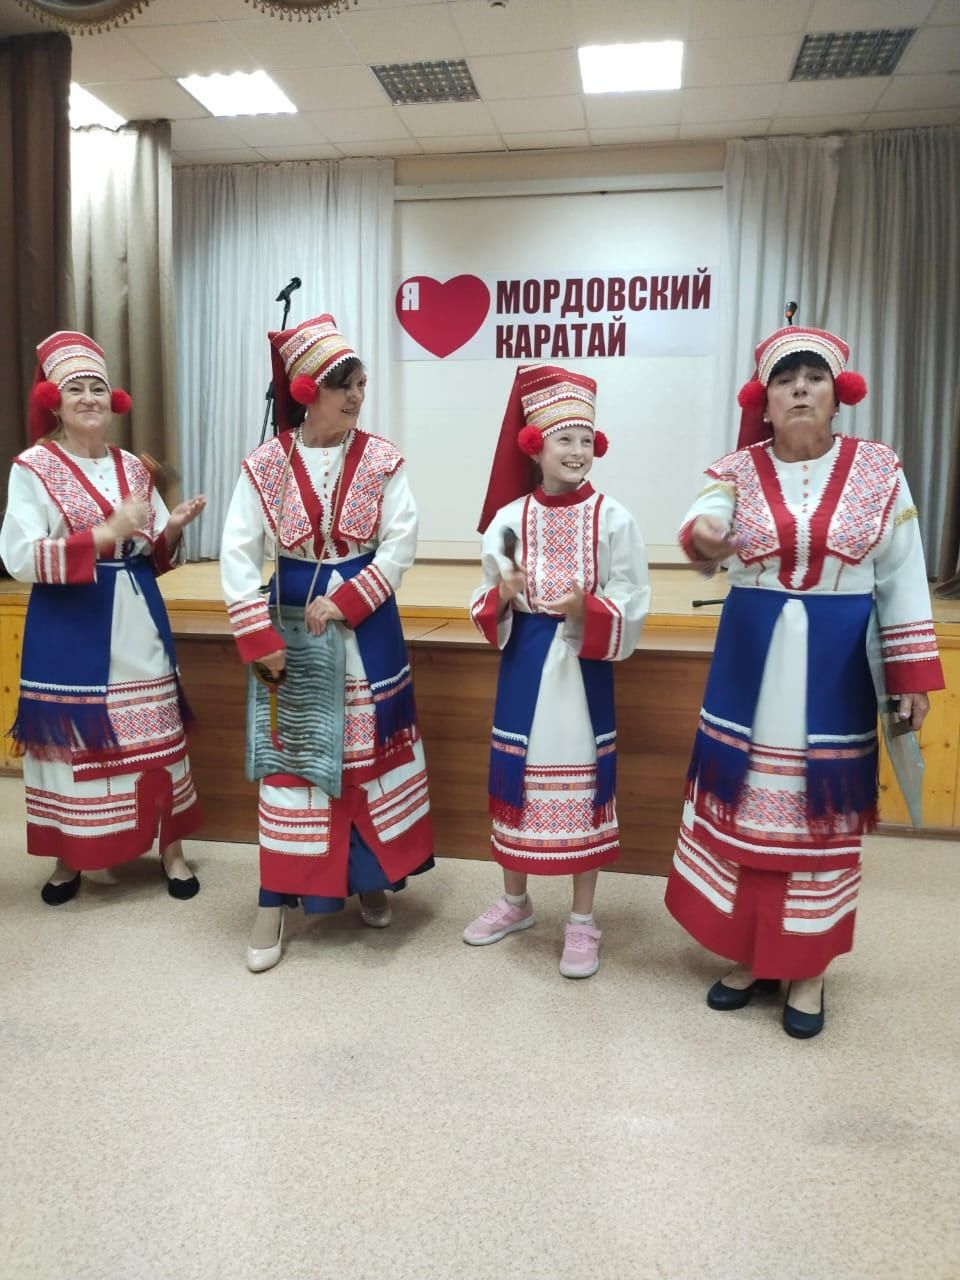 Настоящий праздник устроили для себя жители Мордовских Каратаев